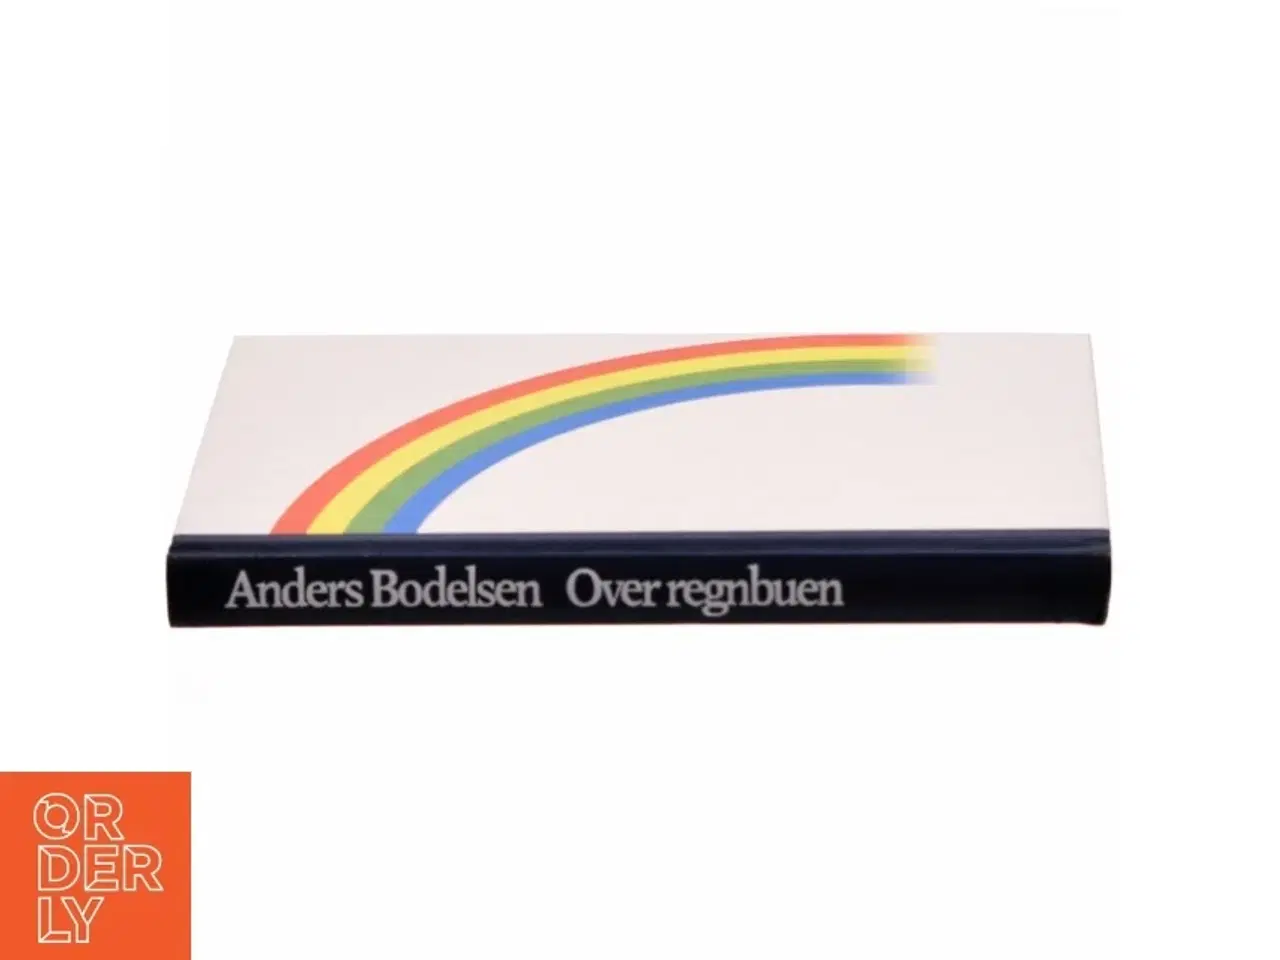 Billede 2 - Over regnbuen af Anders Bodelsen